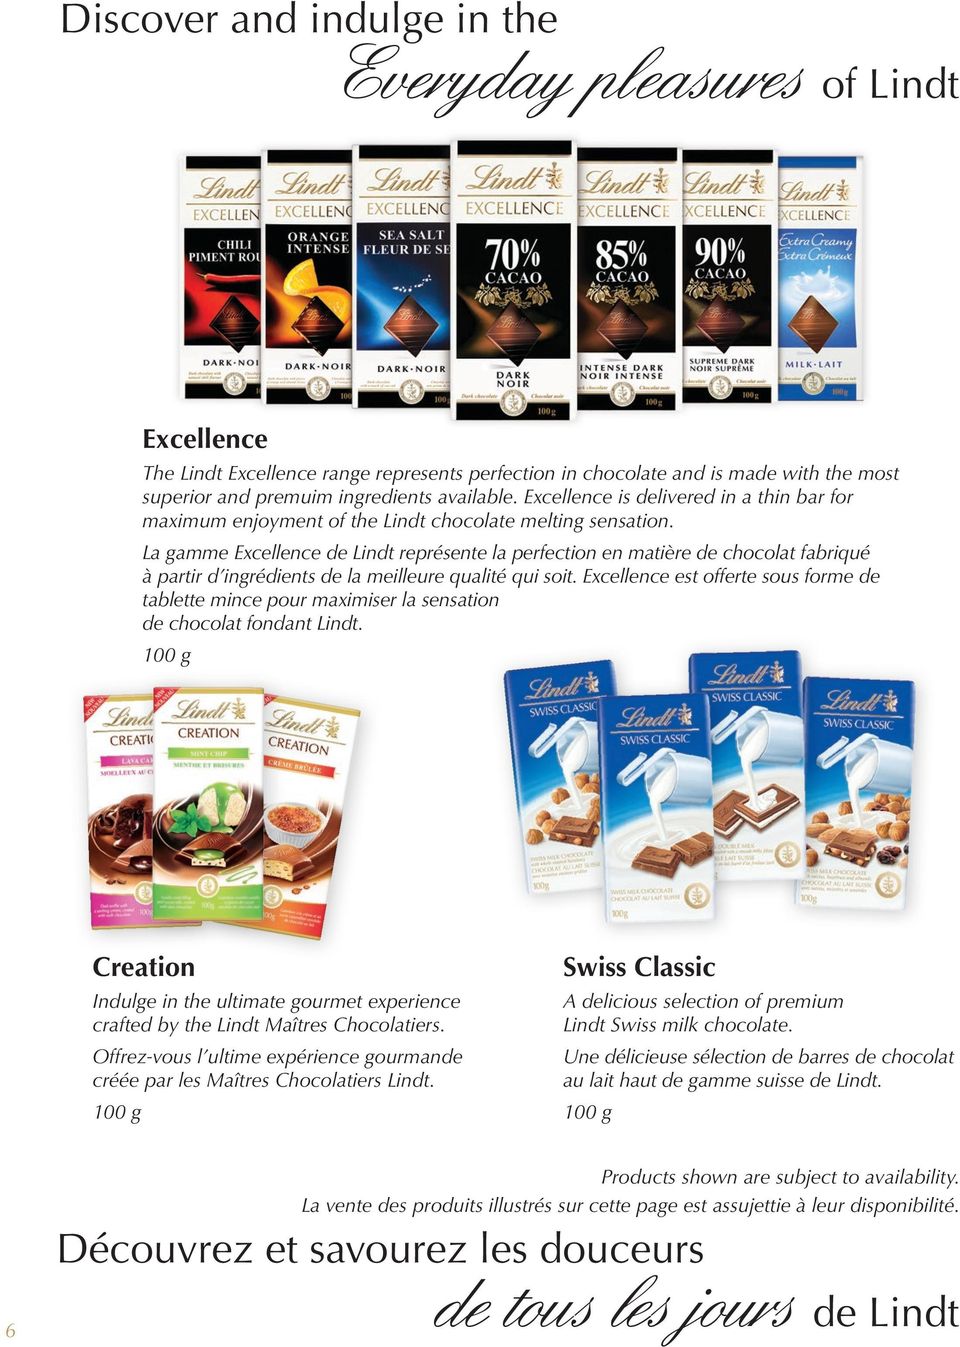 La gamme Excellence de Lindt représente la perfection en matière de chocolat fabriqué à partir d ingrédients de la meilleure qualité qui soit.